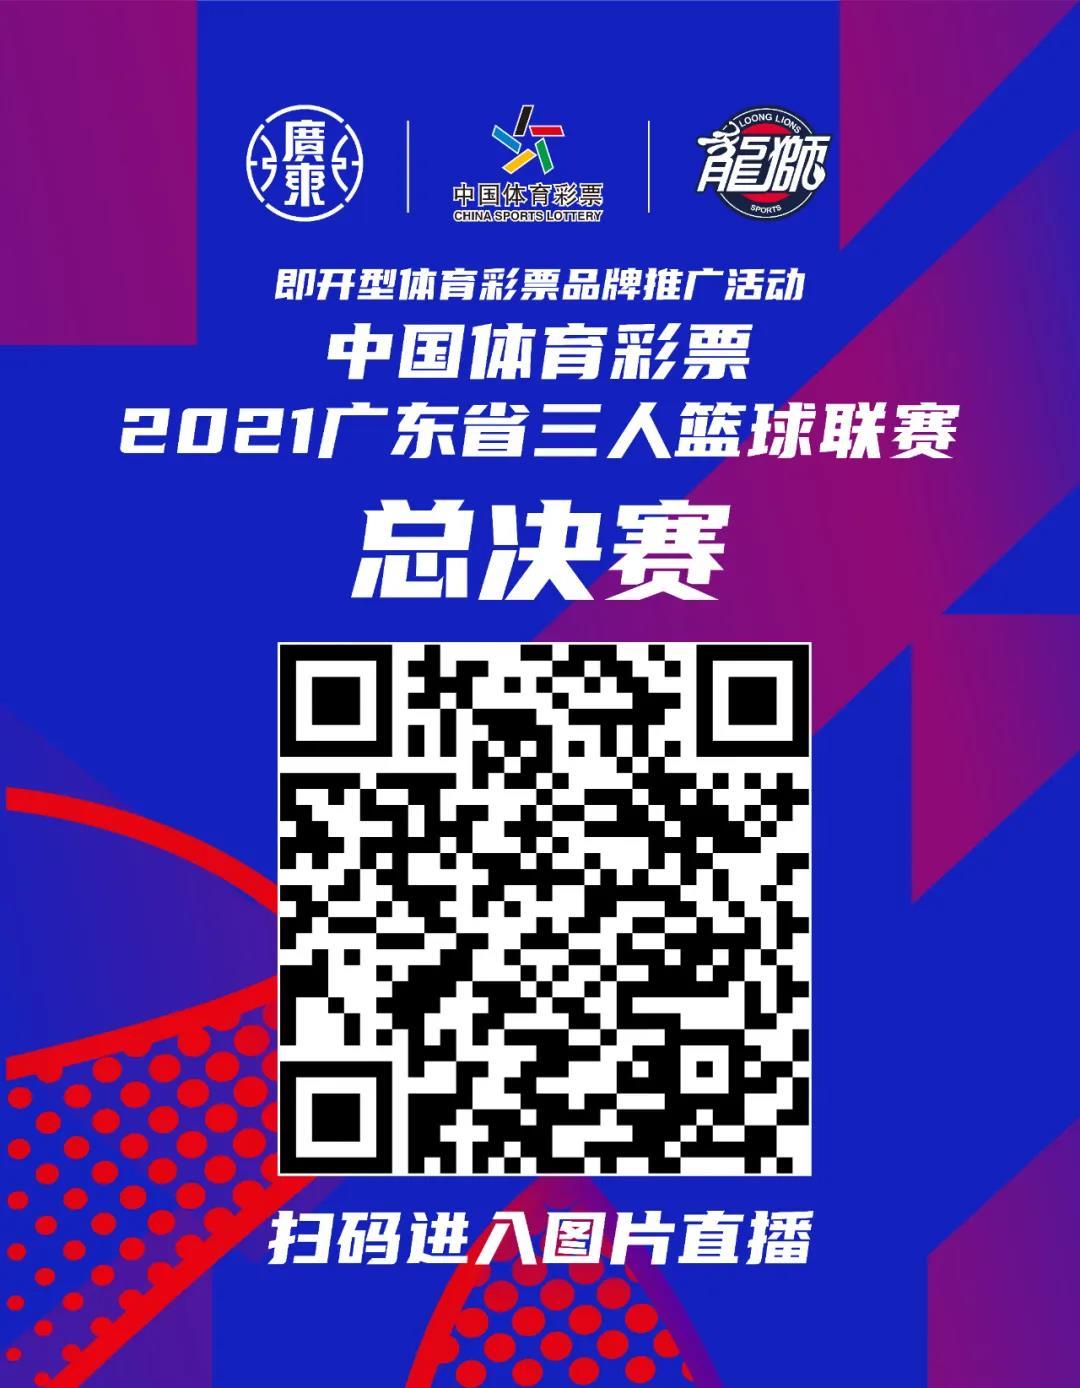 即开票品牌推广活动暨中国体育彩票·2021广东省三人篮球联赛总决赛今明打响